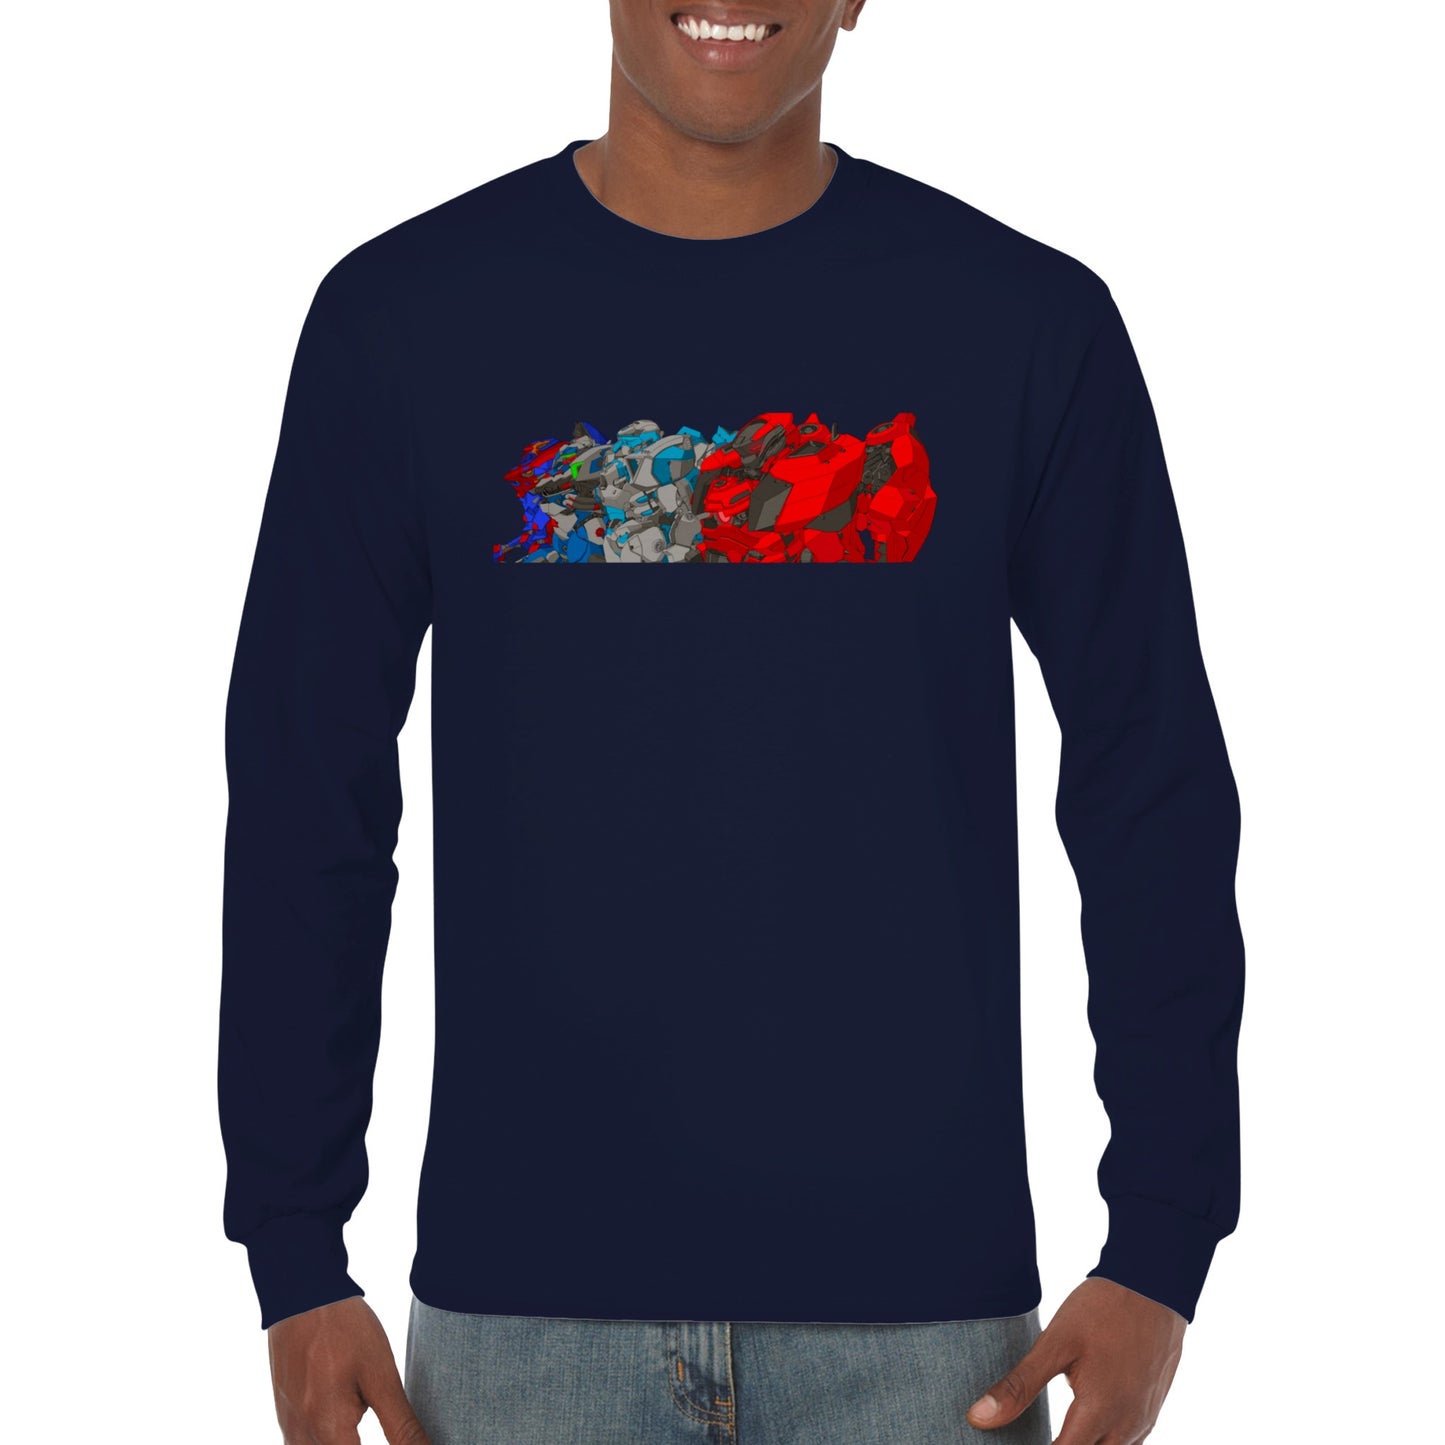 Graycraft Fan Art Classic Unisex Longsleeve T-shirt